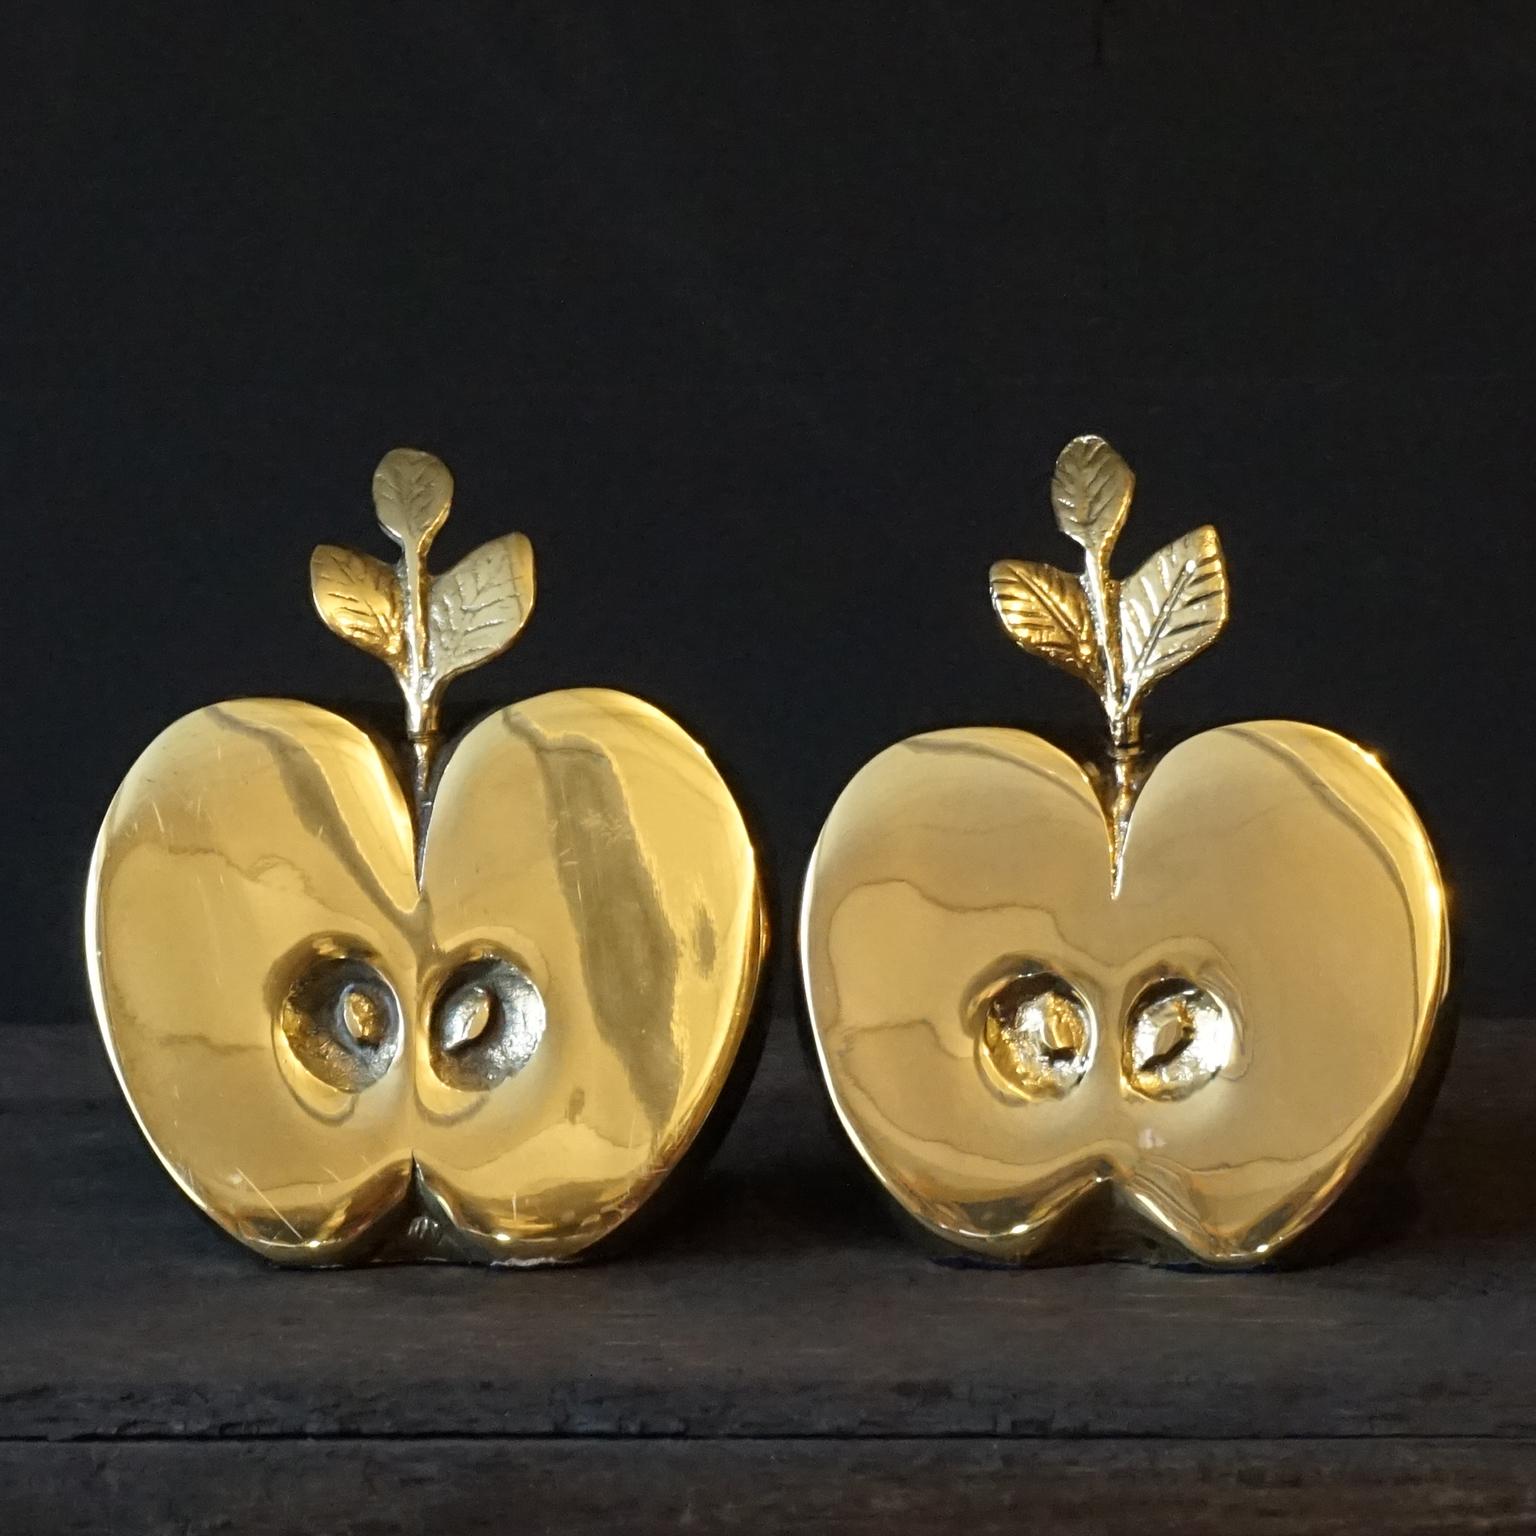 Bel ensemble de deux parties de pomme en laiton demi-brillant des années 1950-1960 de Hollywood Regency Dutch Apko à utiliser comme serre-livres, décoration ou presse-papiers.

Joli et lourd à cause du laiton et parce qu'ils sont remplis de